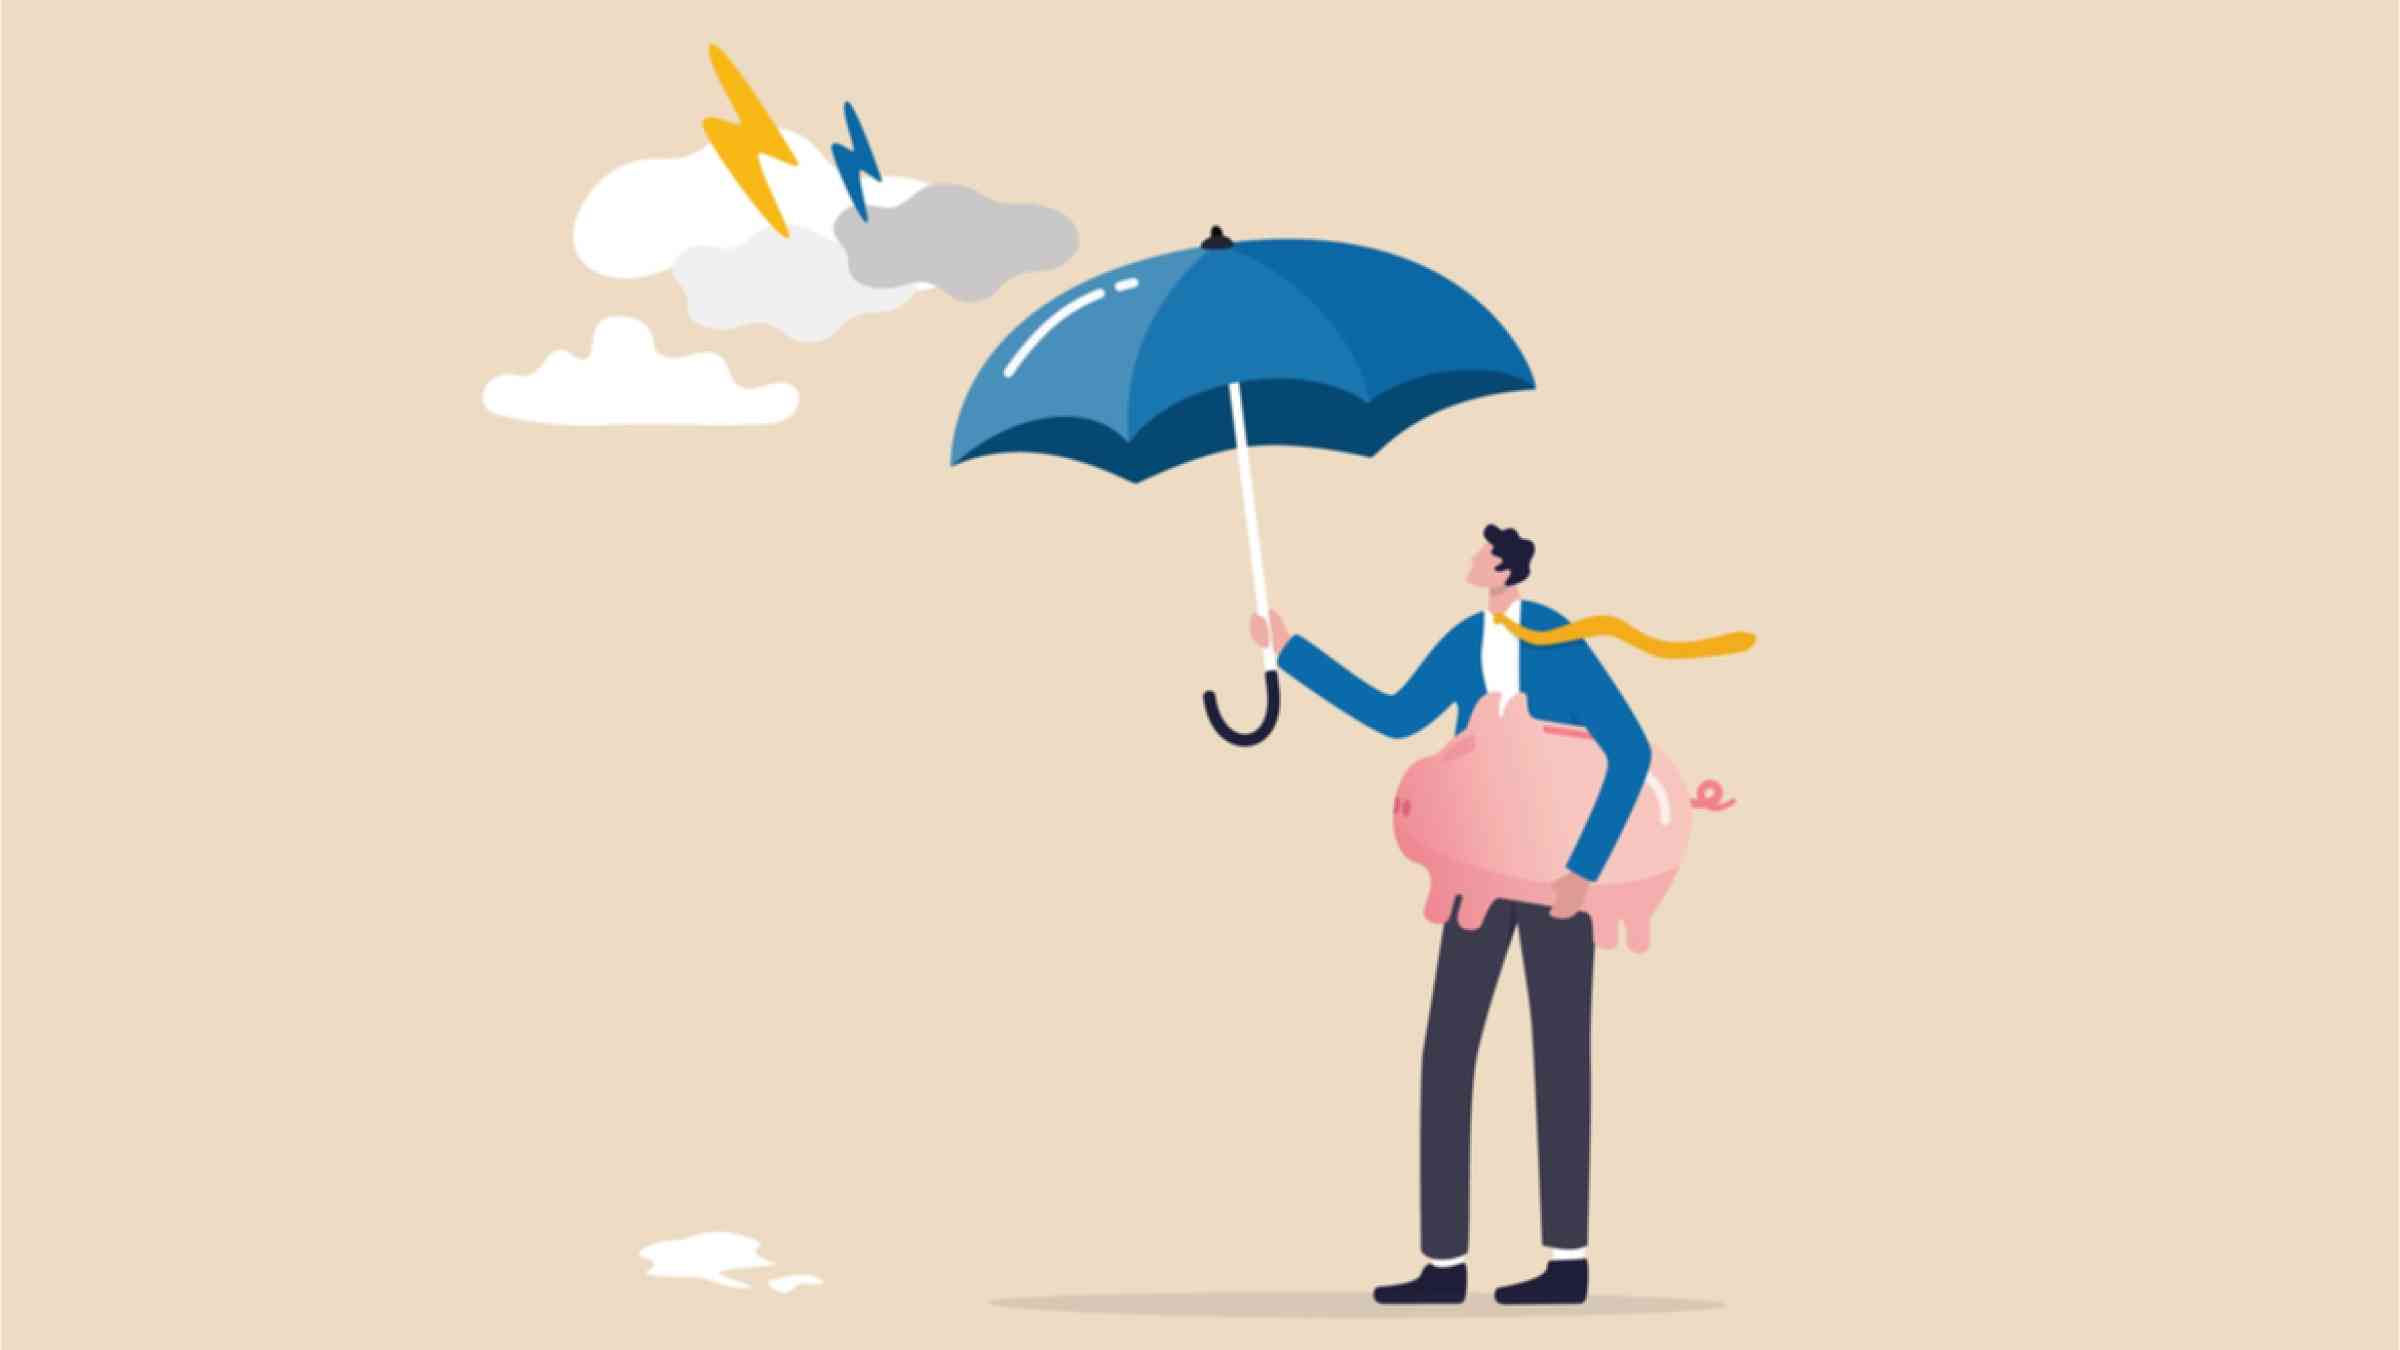 Entrepreneurs holding a strong umbrella to protect the savings bank.